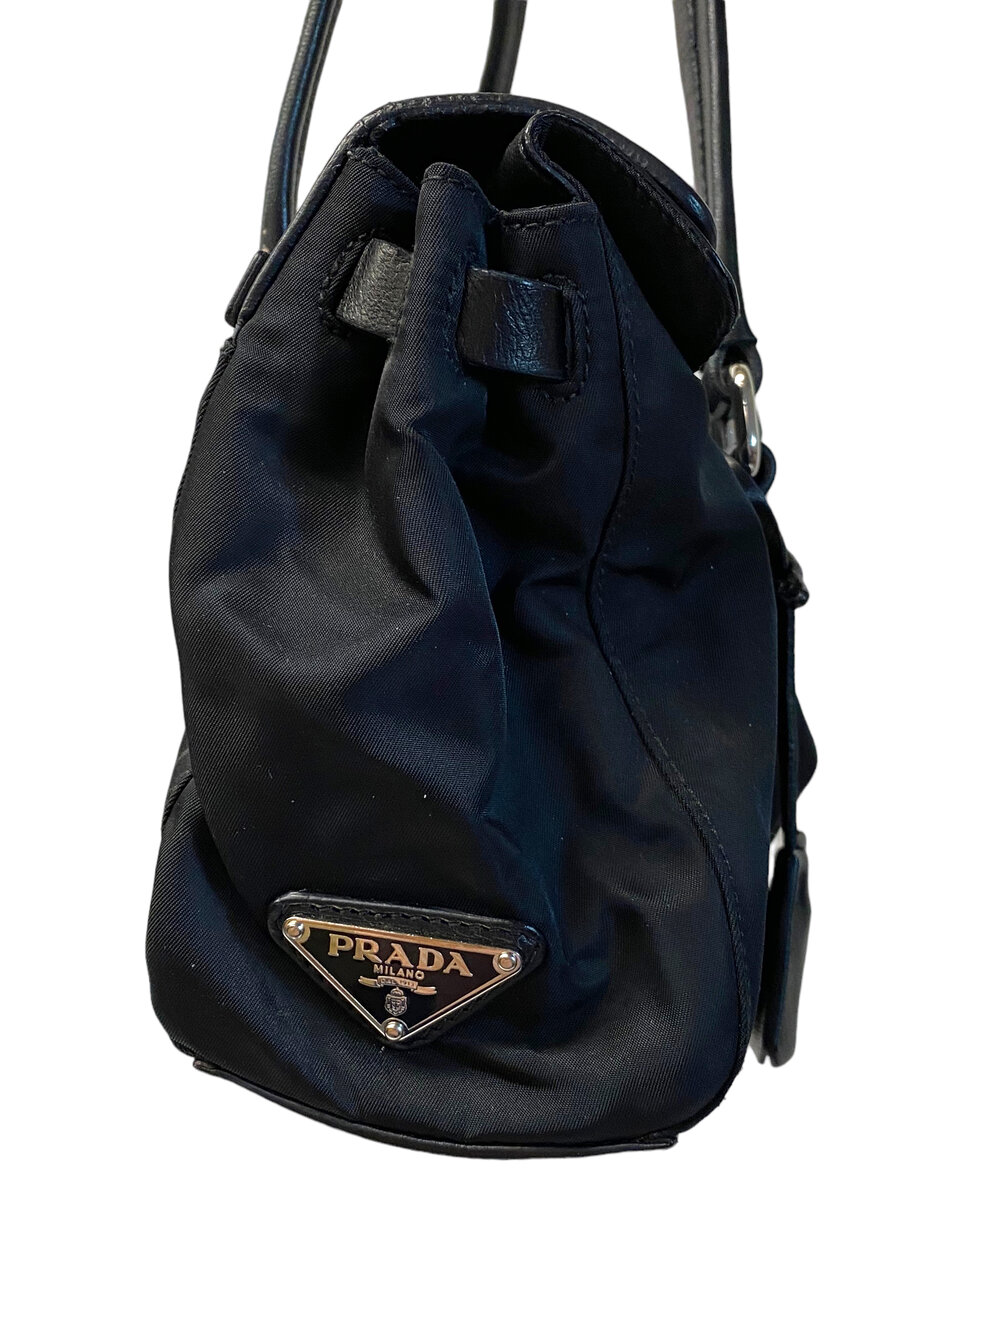 Leather Trimmed Re Nylon Tote Bag in Black - Prada